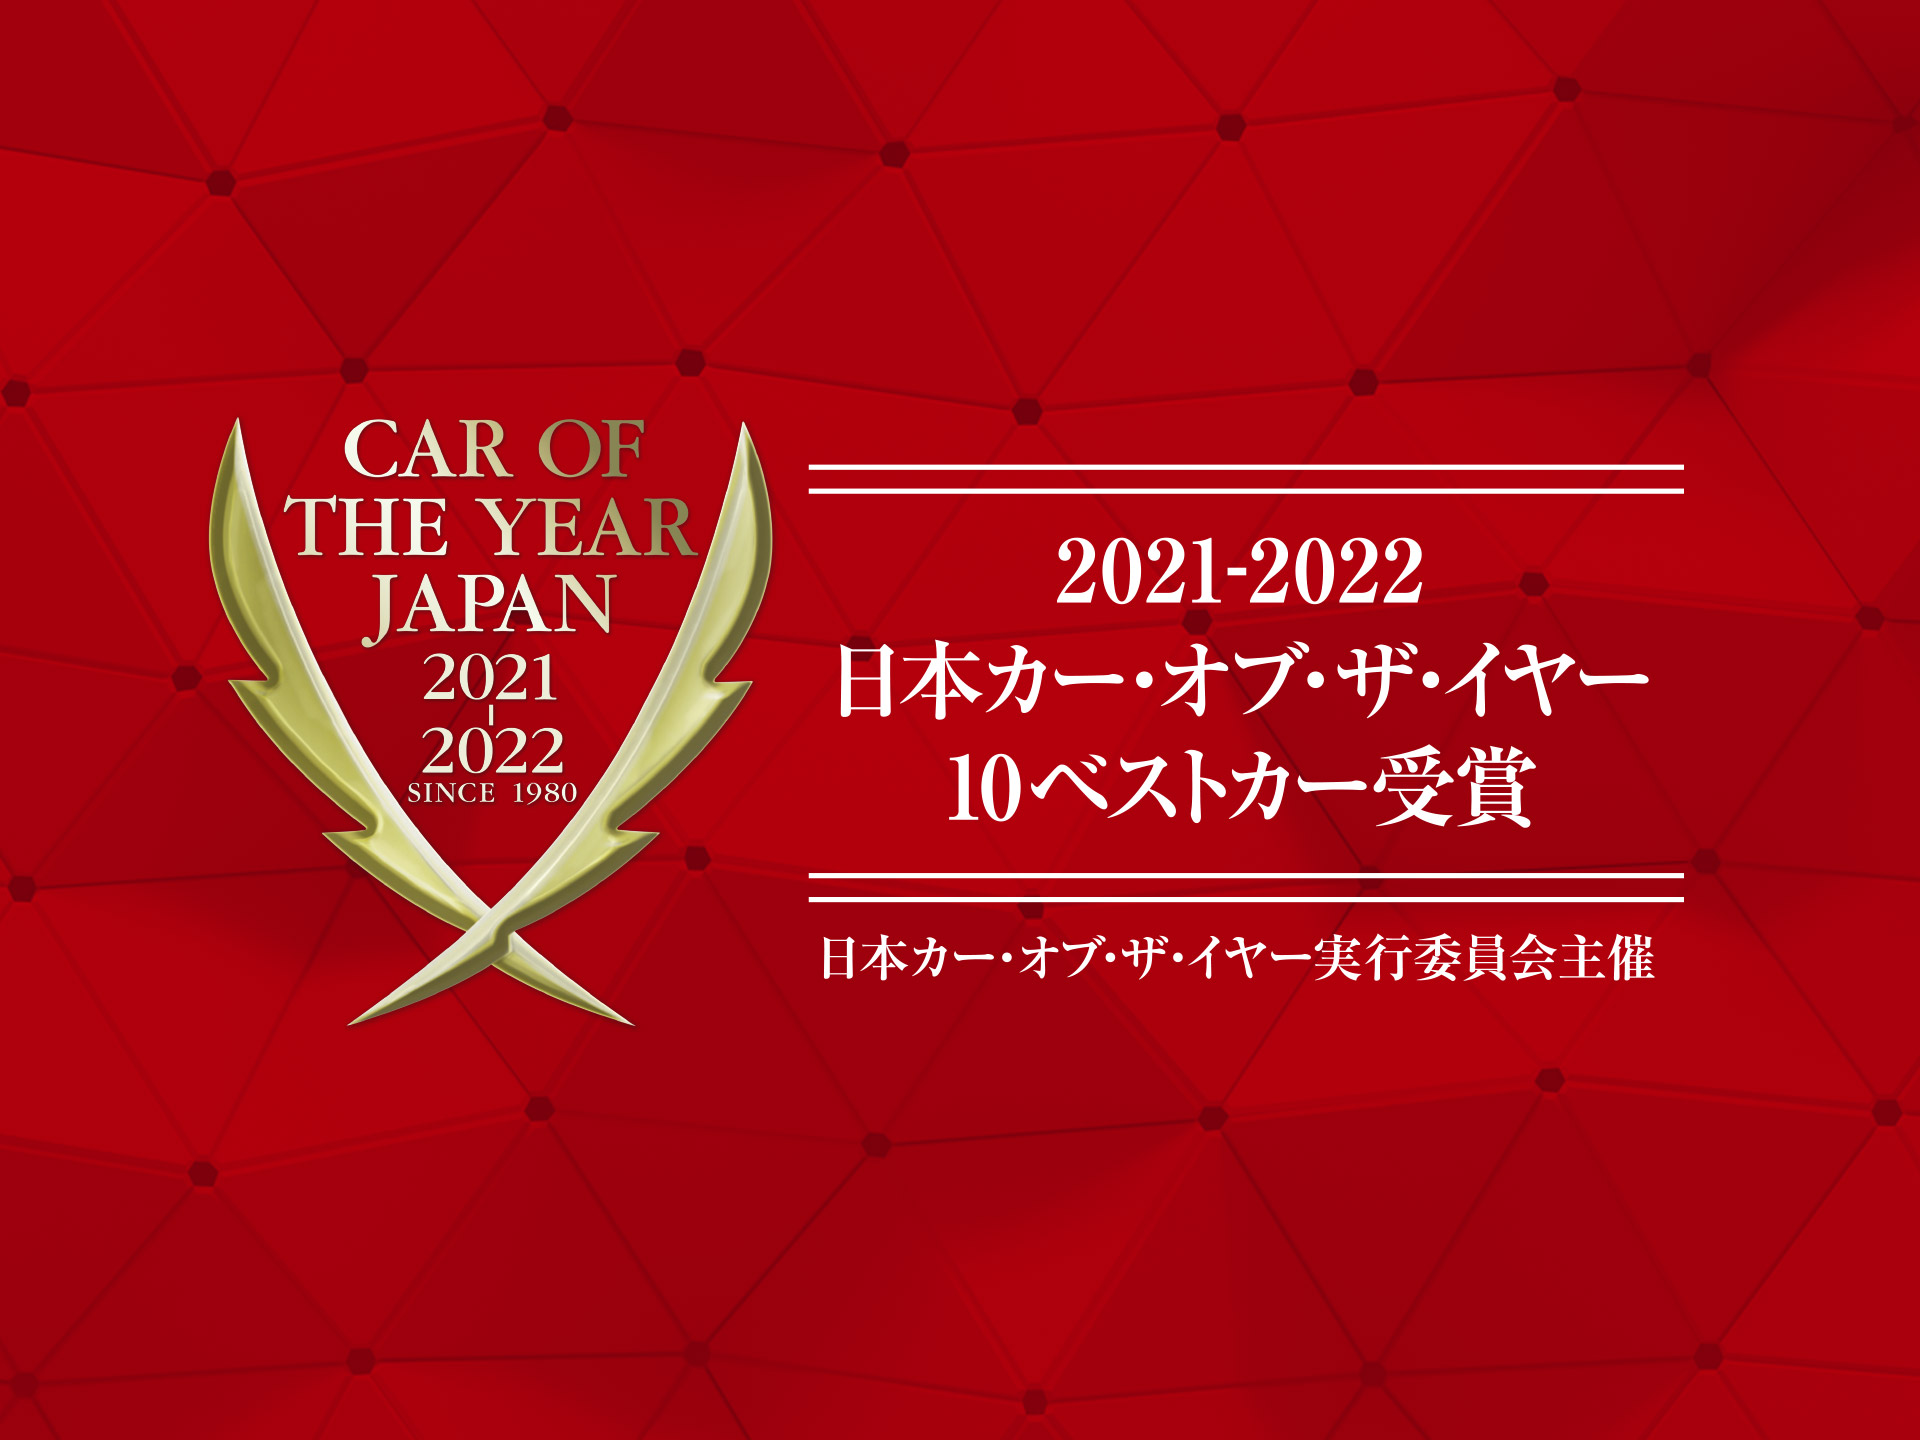 2021-2022日本カー・オブ・ザ・イヤーの「10ベストカー」が決定 